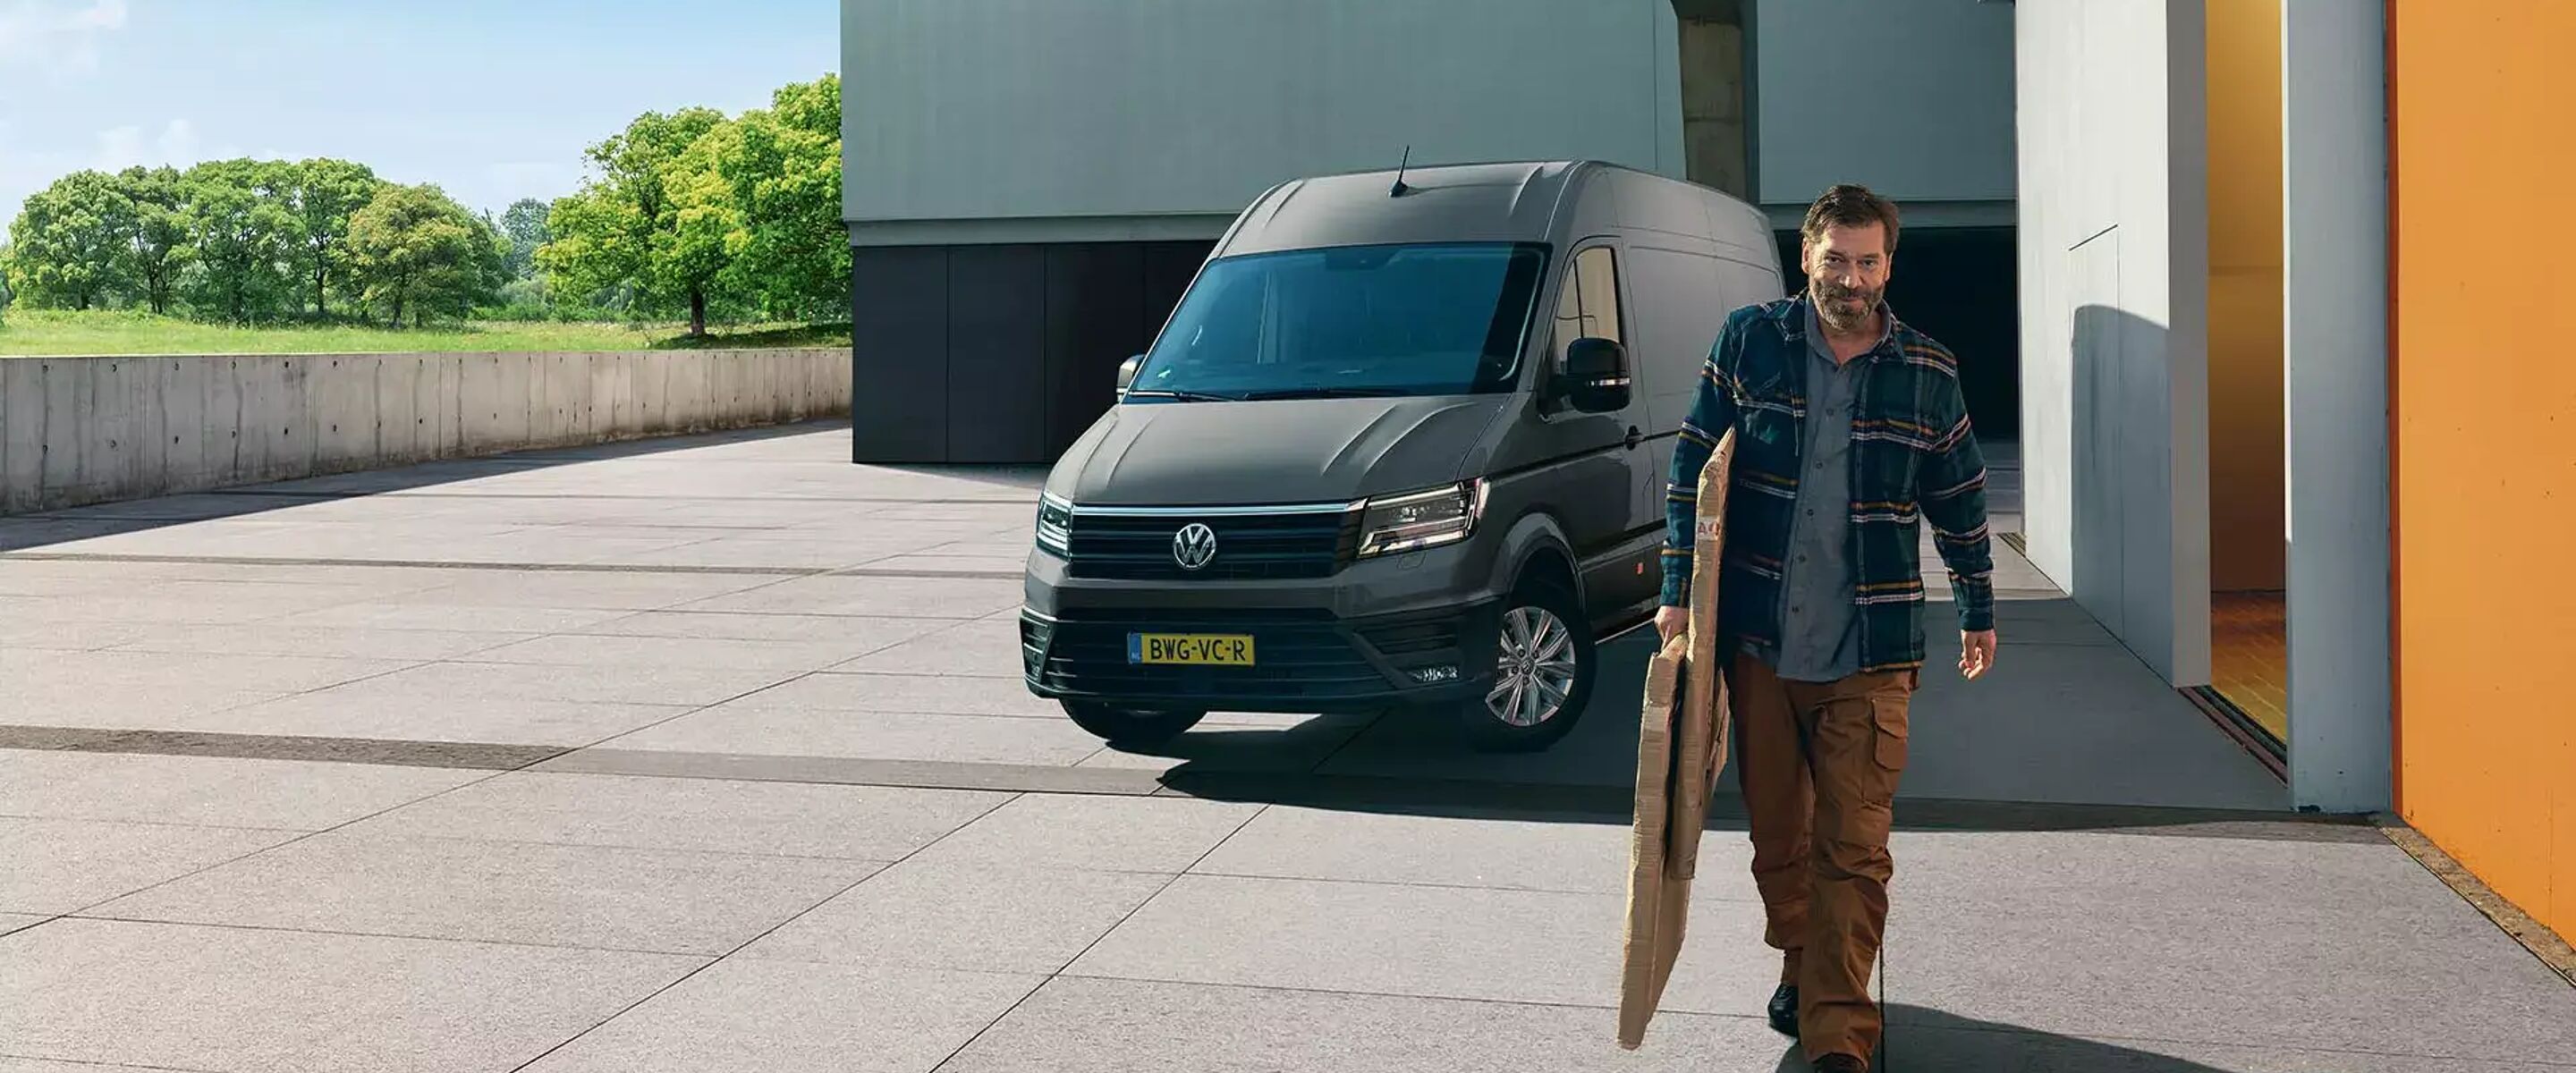 Volkswagen-Bedrijfswagens-Voorjaarscampagne-After-Sales-23-Visual-2.webp